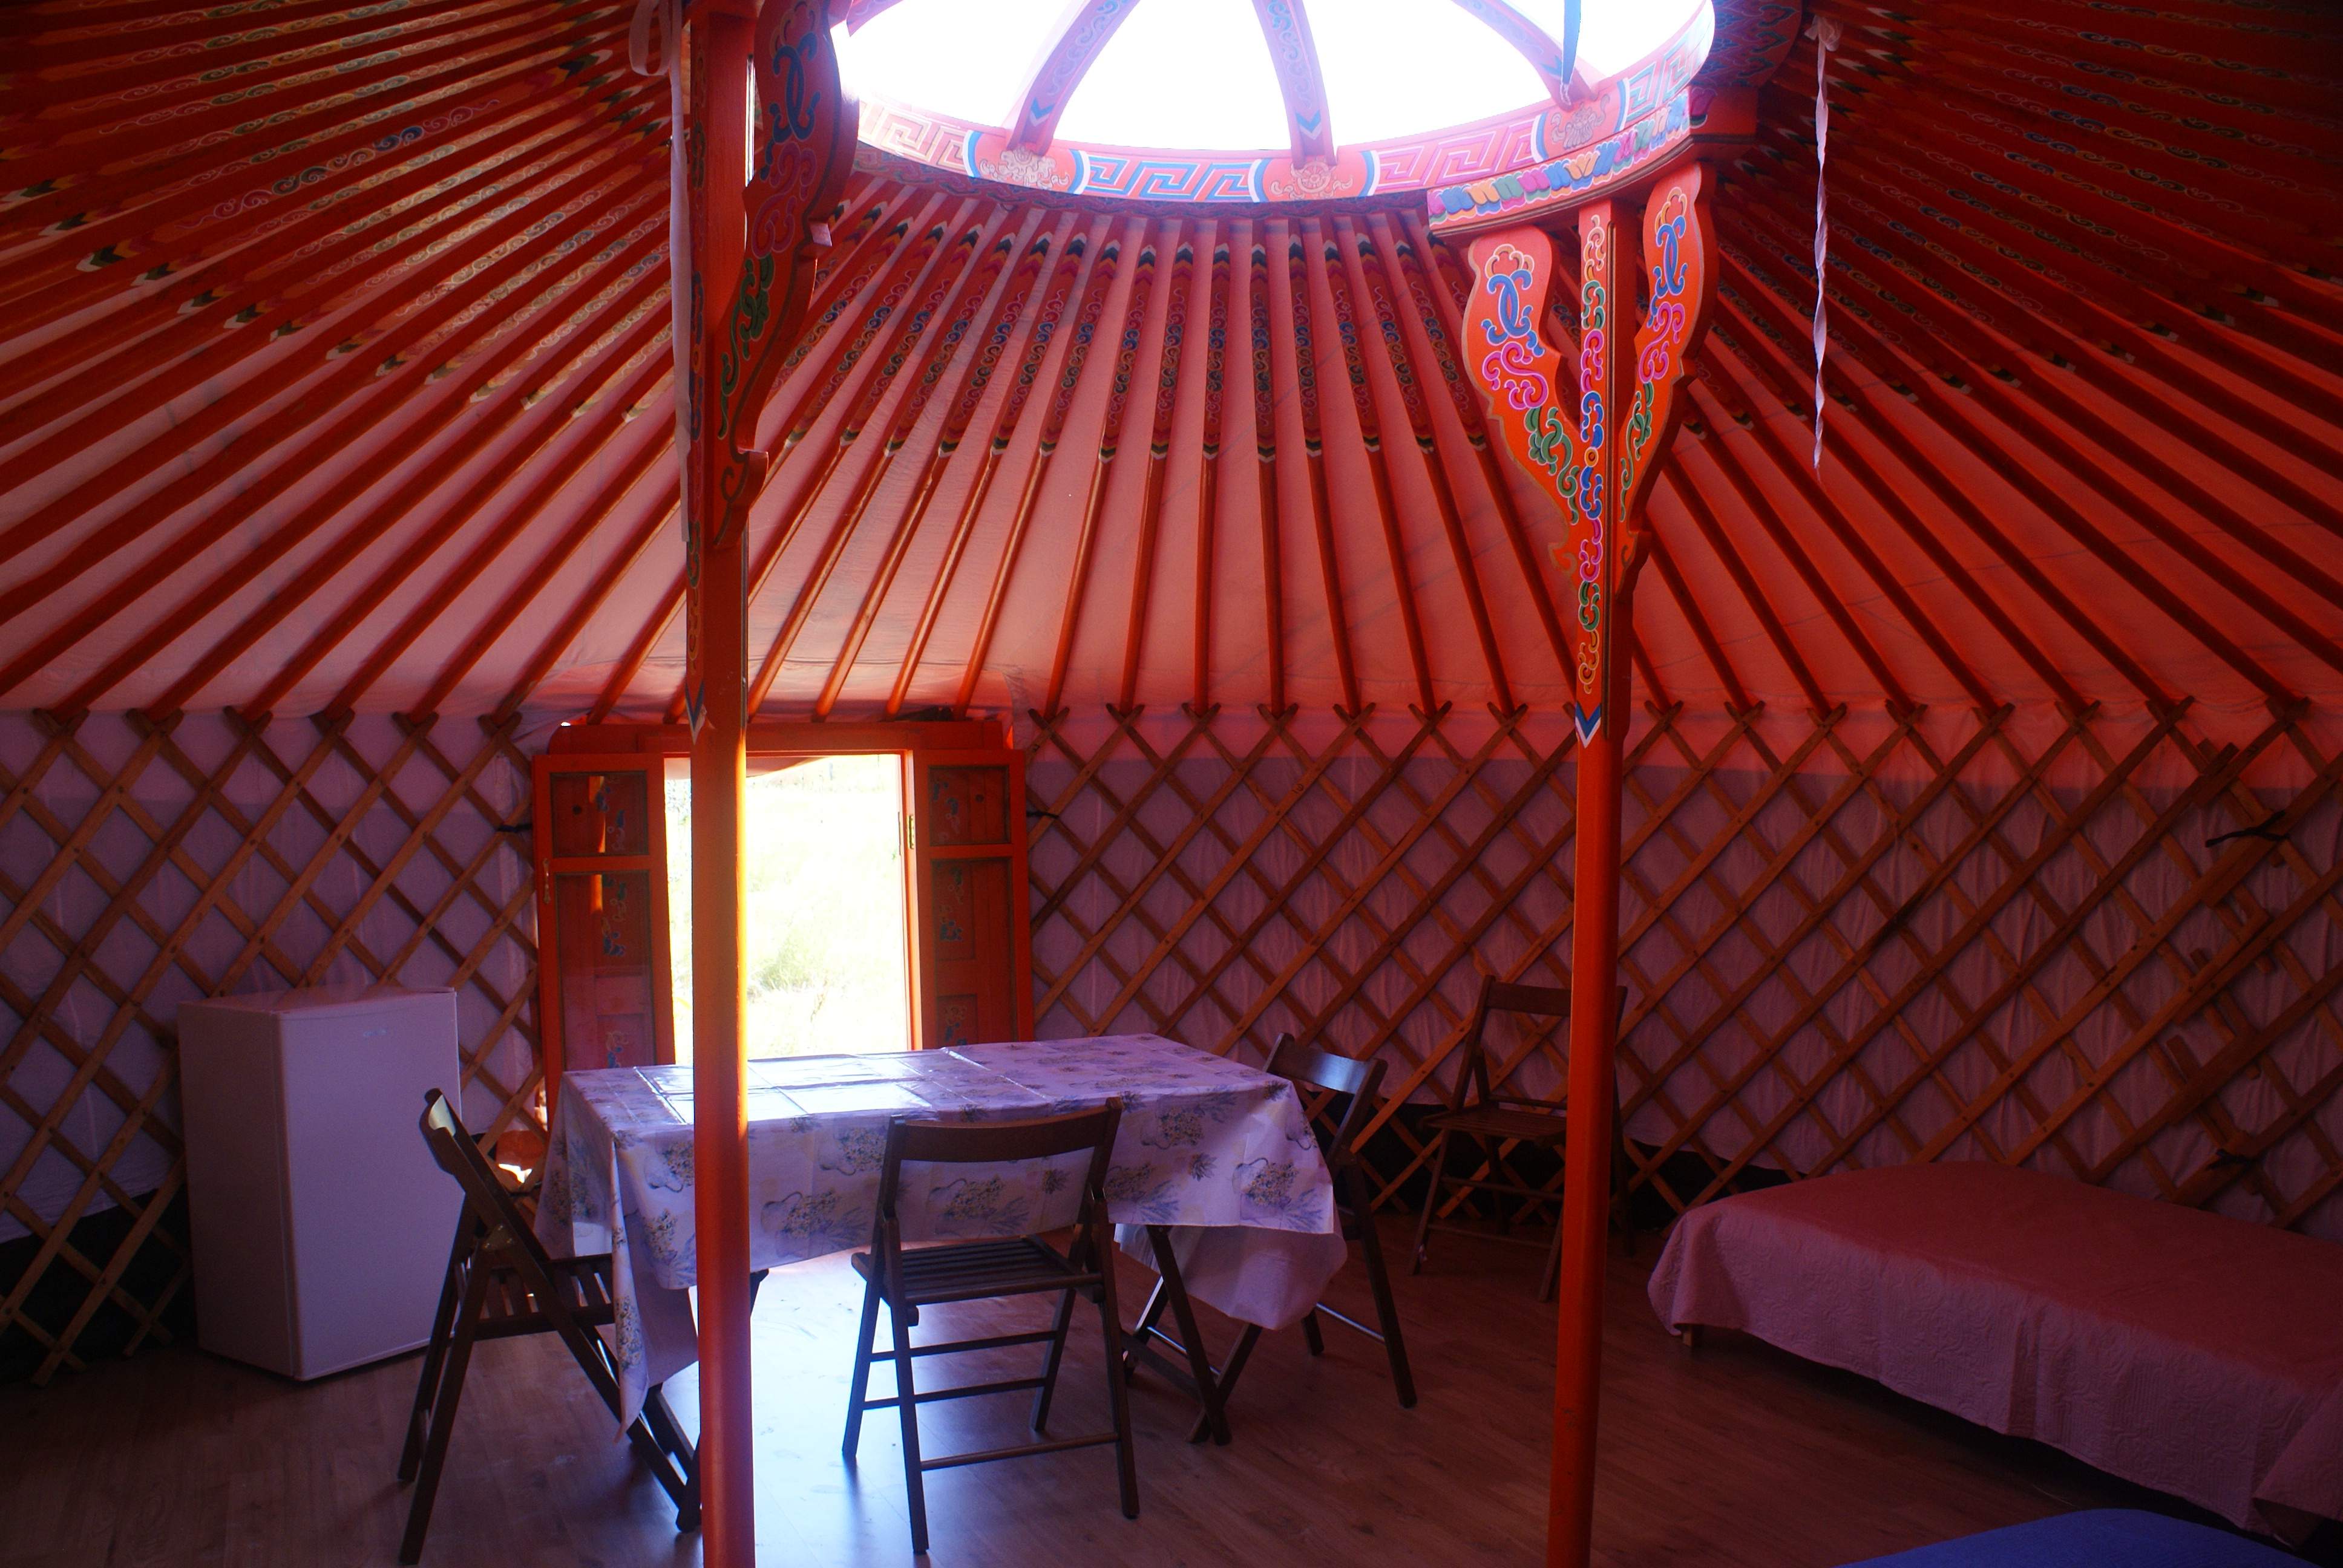 Intero yurta